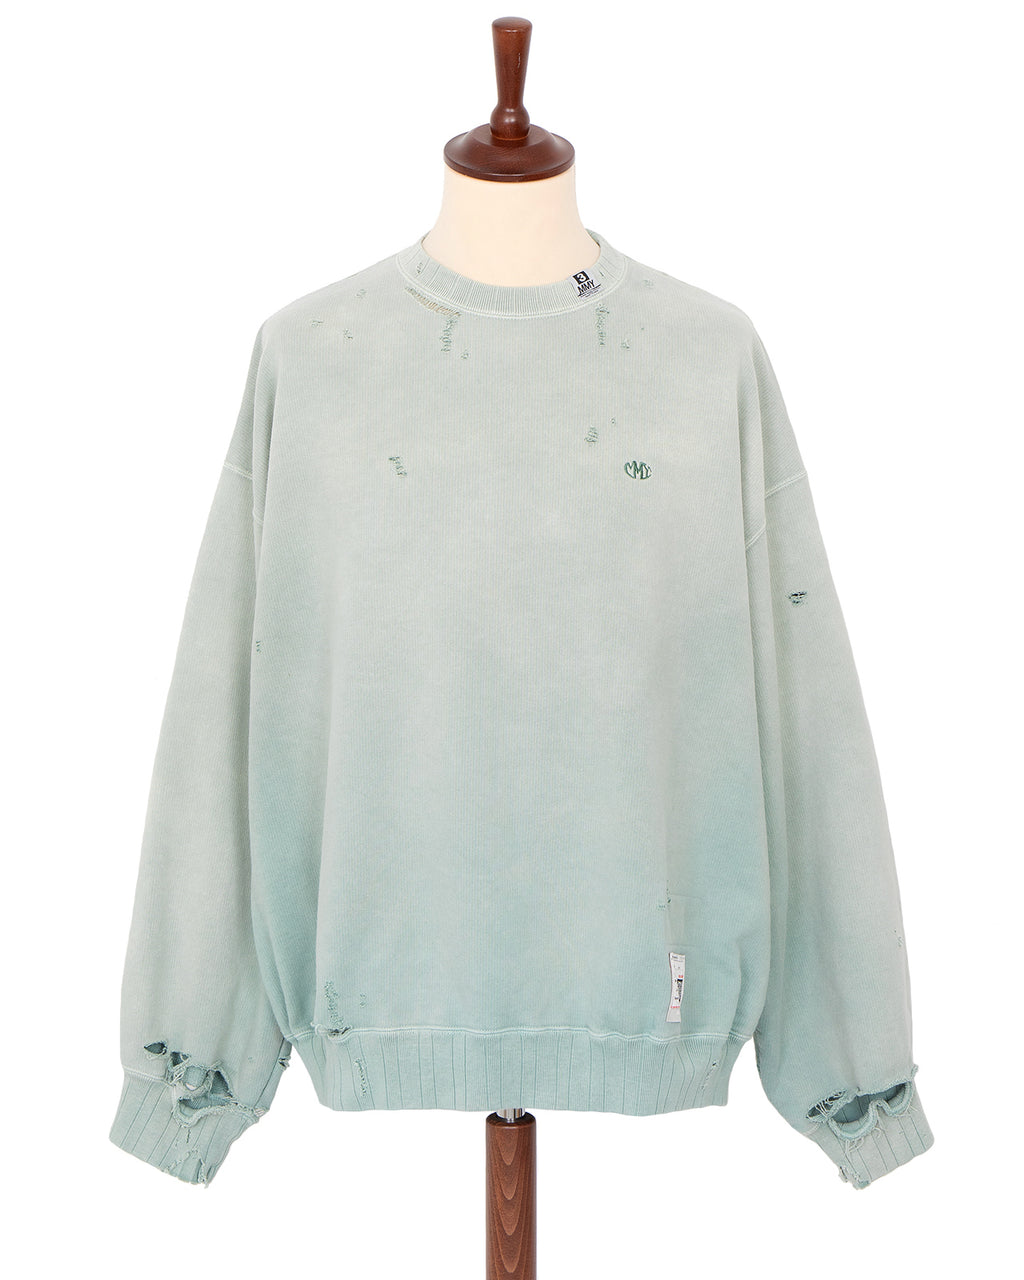 Maison Mihara Yasuhiro Pullover Sweatshirt, Green